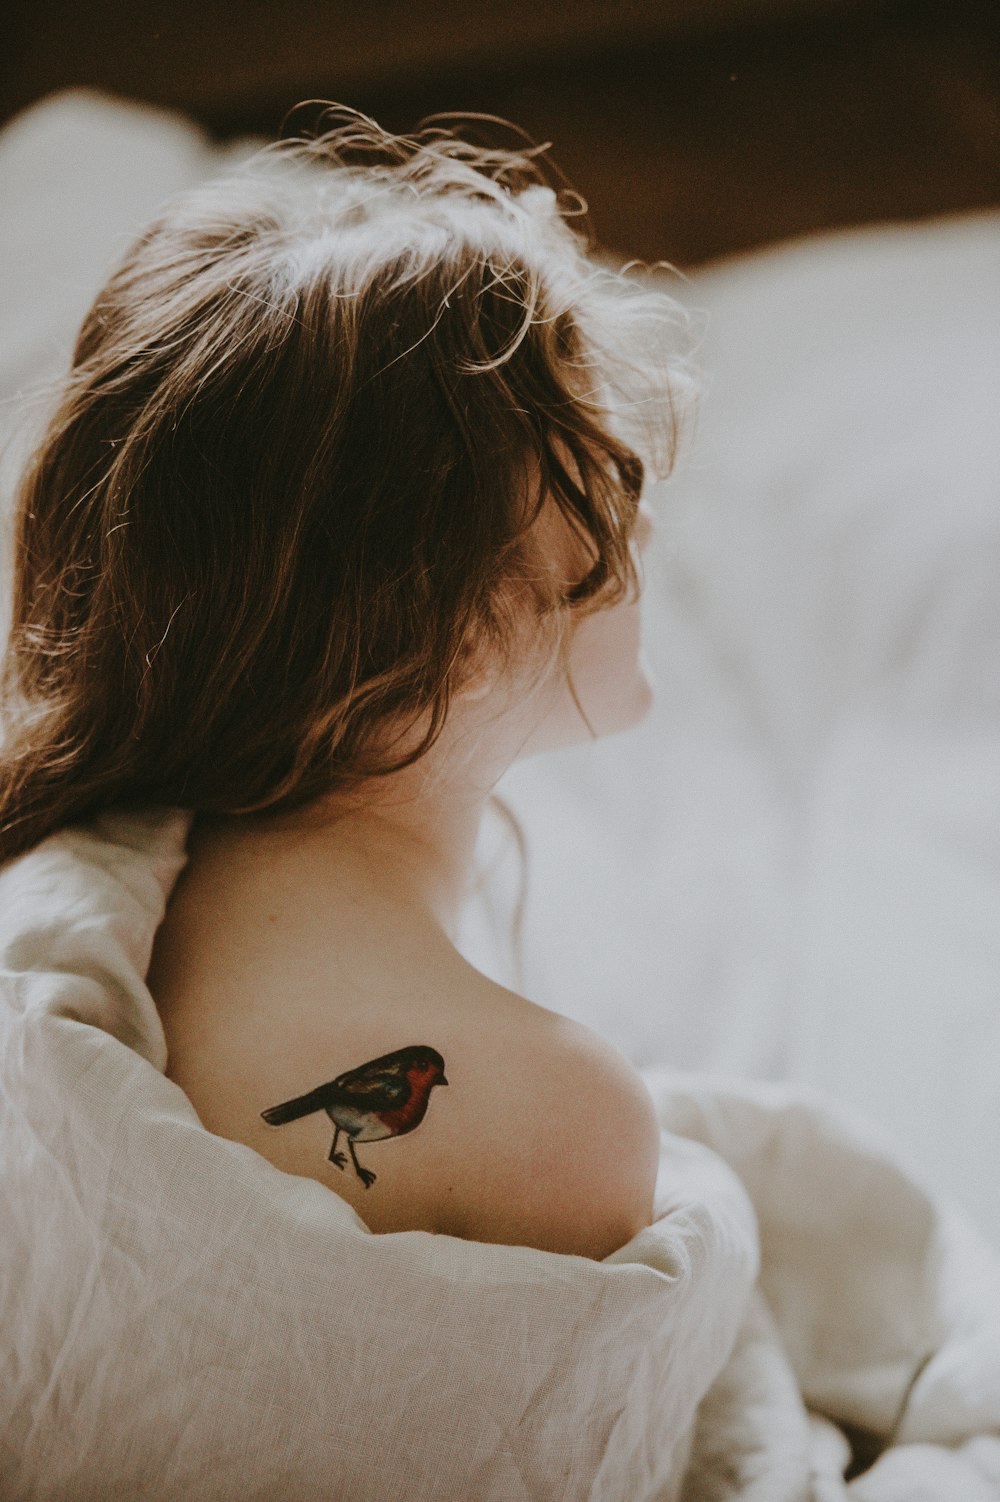 femme avec tatouage d’oiseau dans l’épaule couchée sur une surface blanche